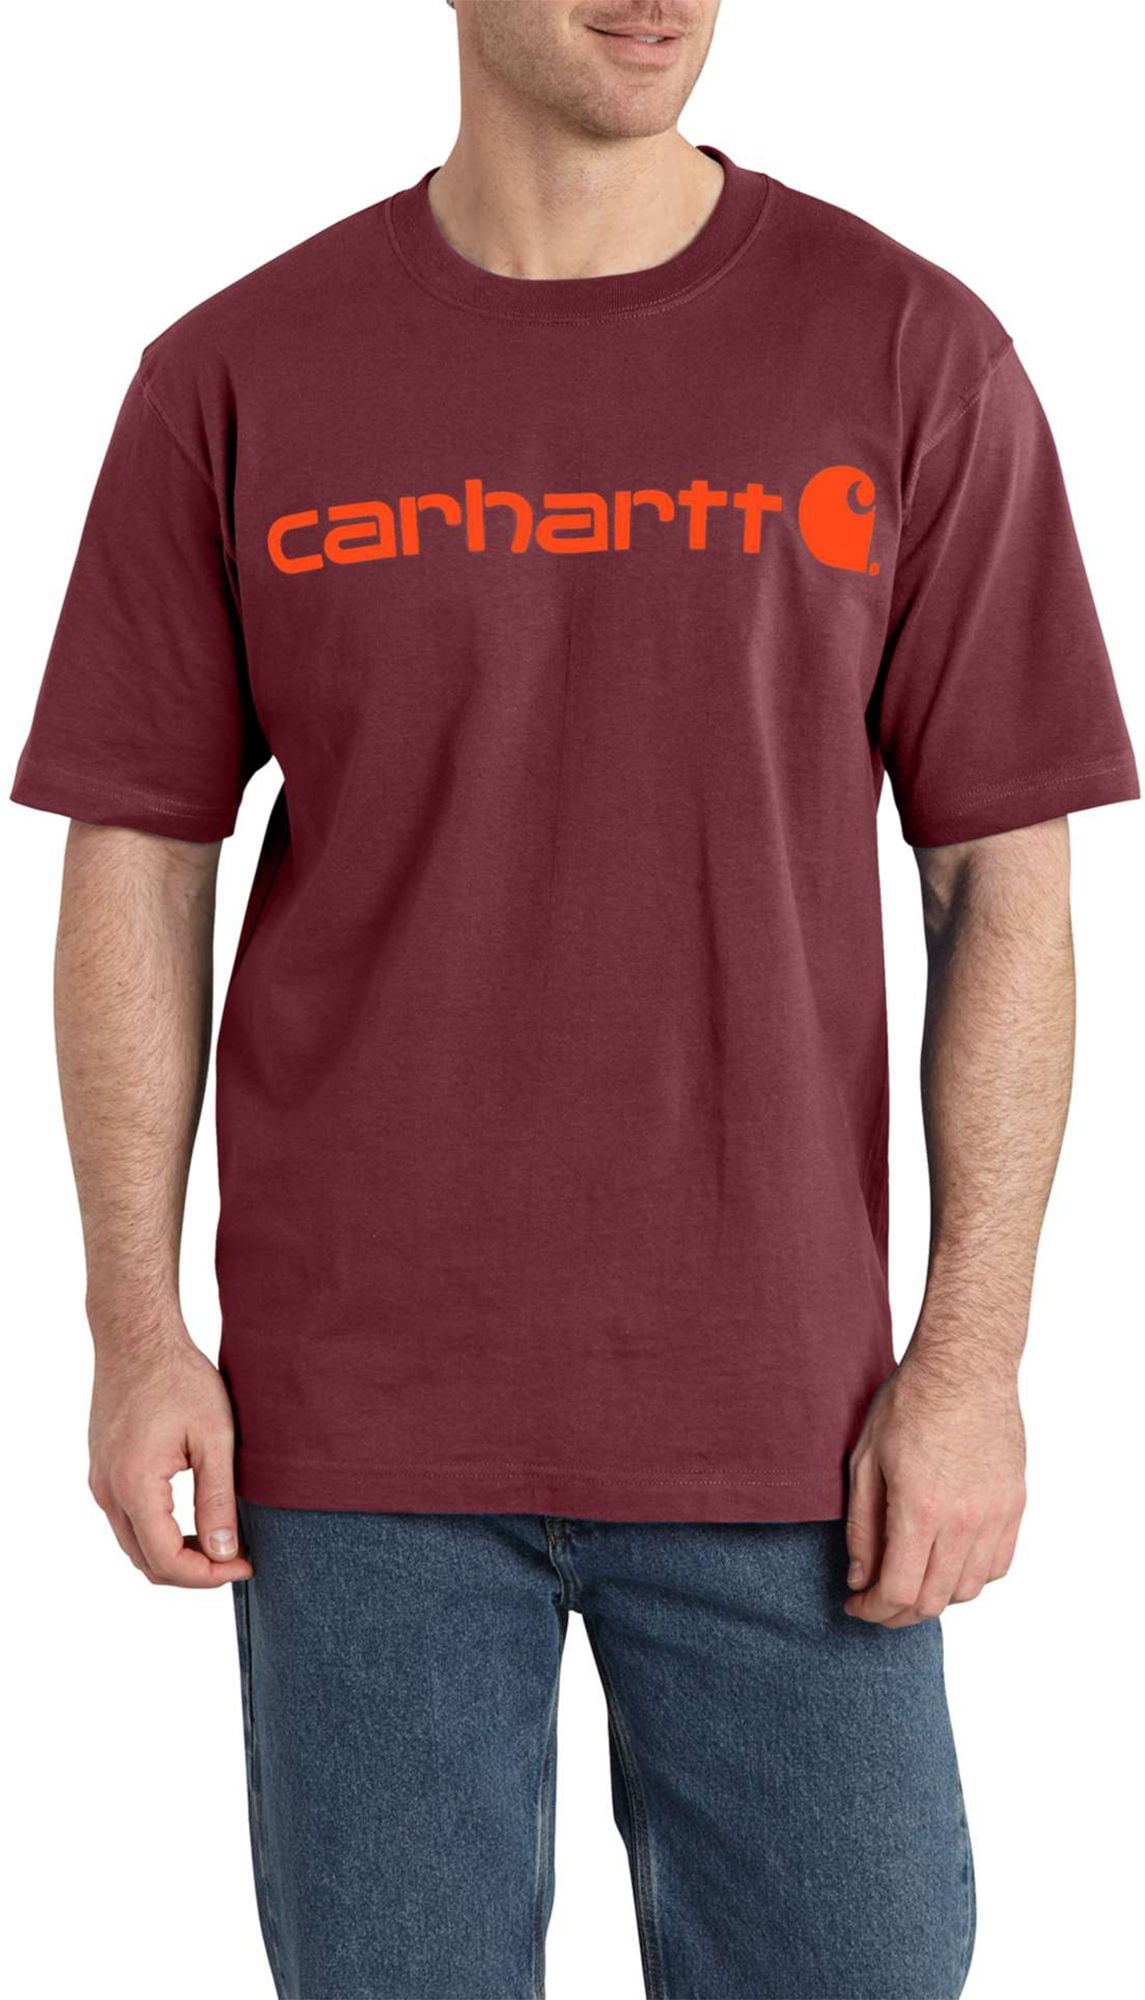 Carhartt - Carhartt Men's Workwear Logo T-Shirt - Walmart.com - Walmart.com